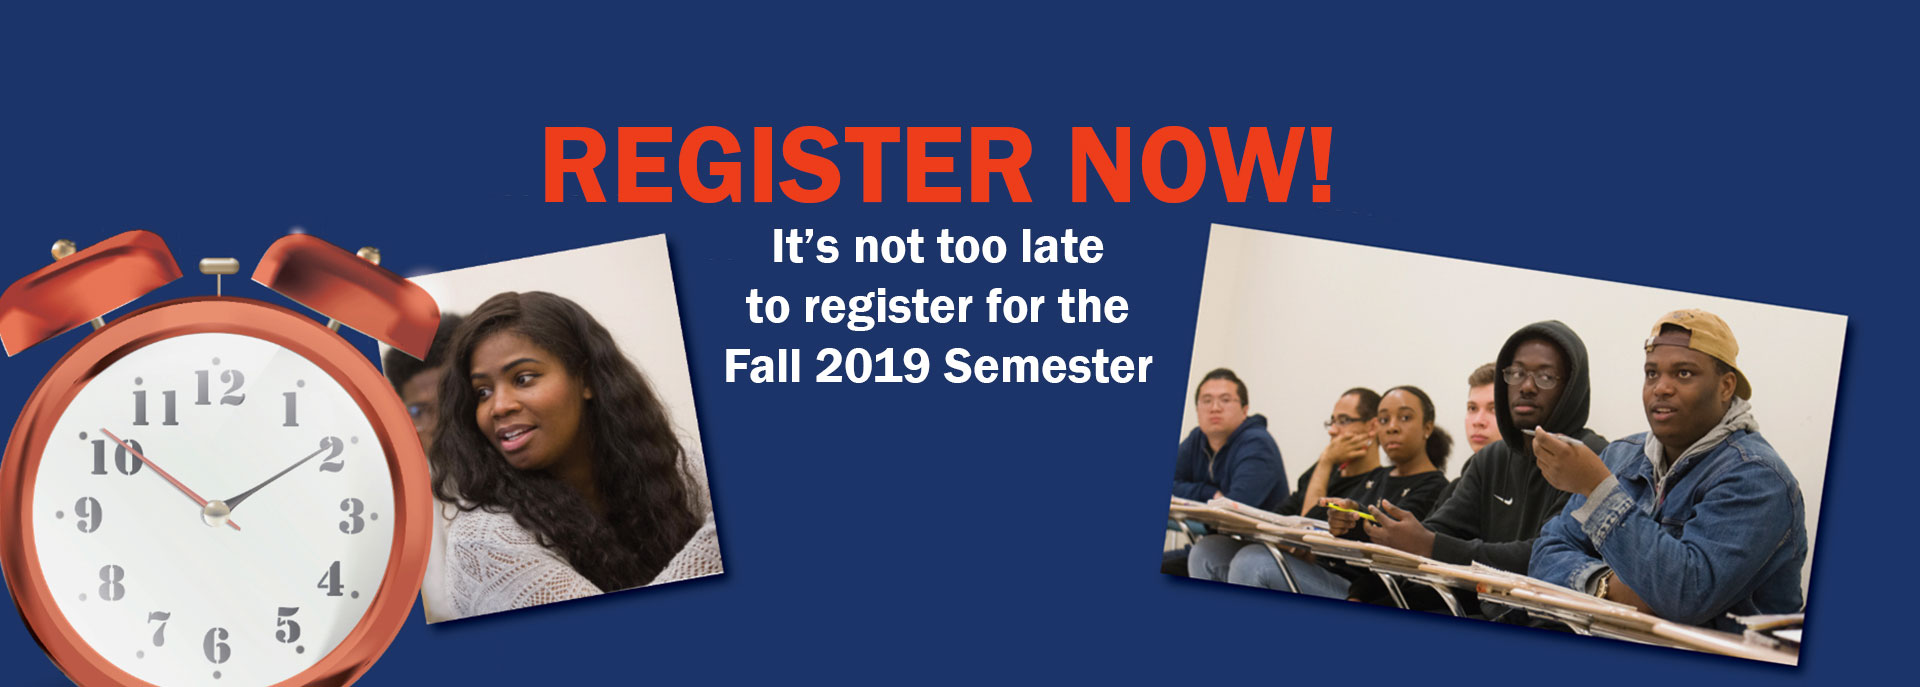 Register Now for Fall 2019 Semester